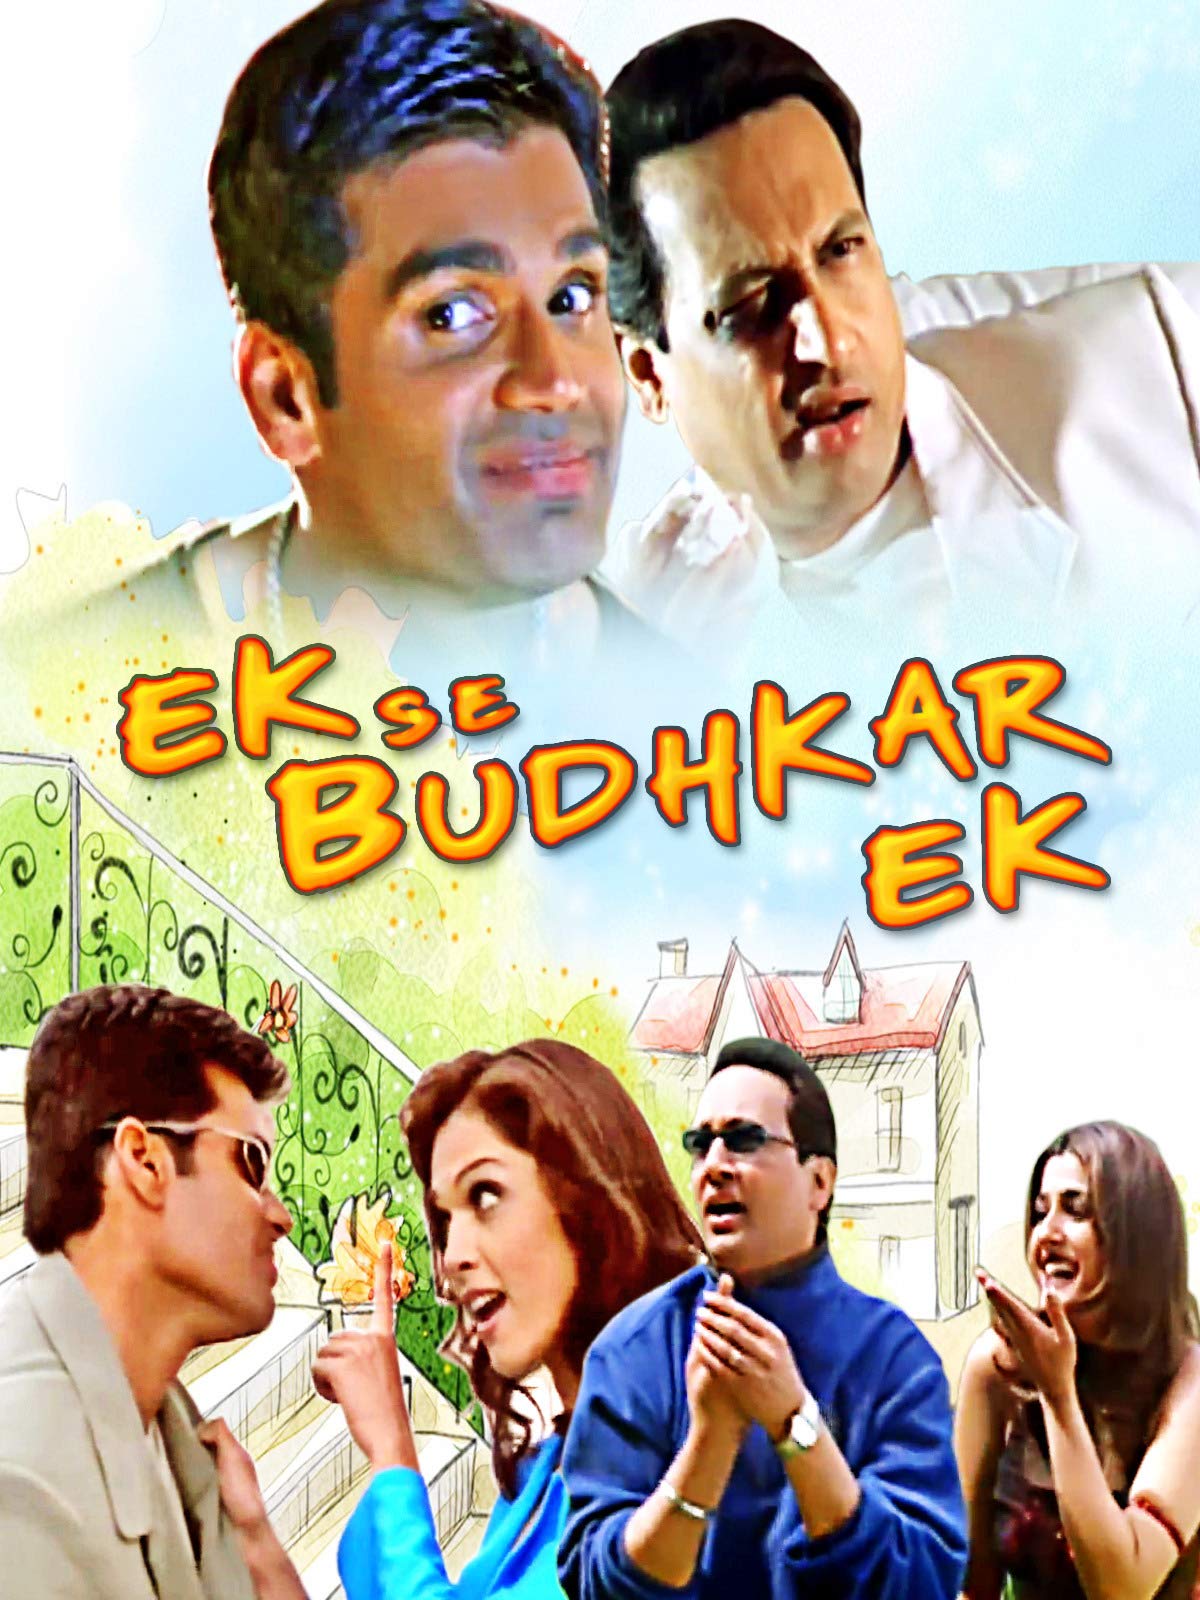 Poster for the movie "Ek Se Badhkar Ek"